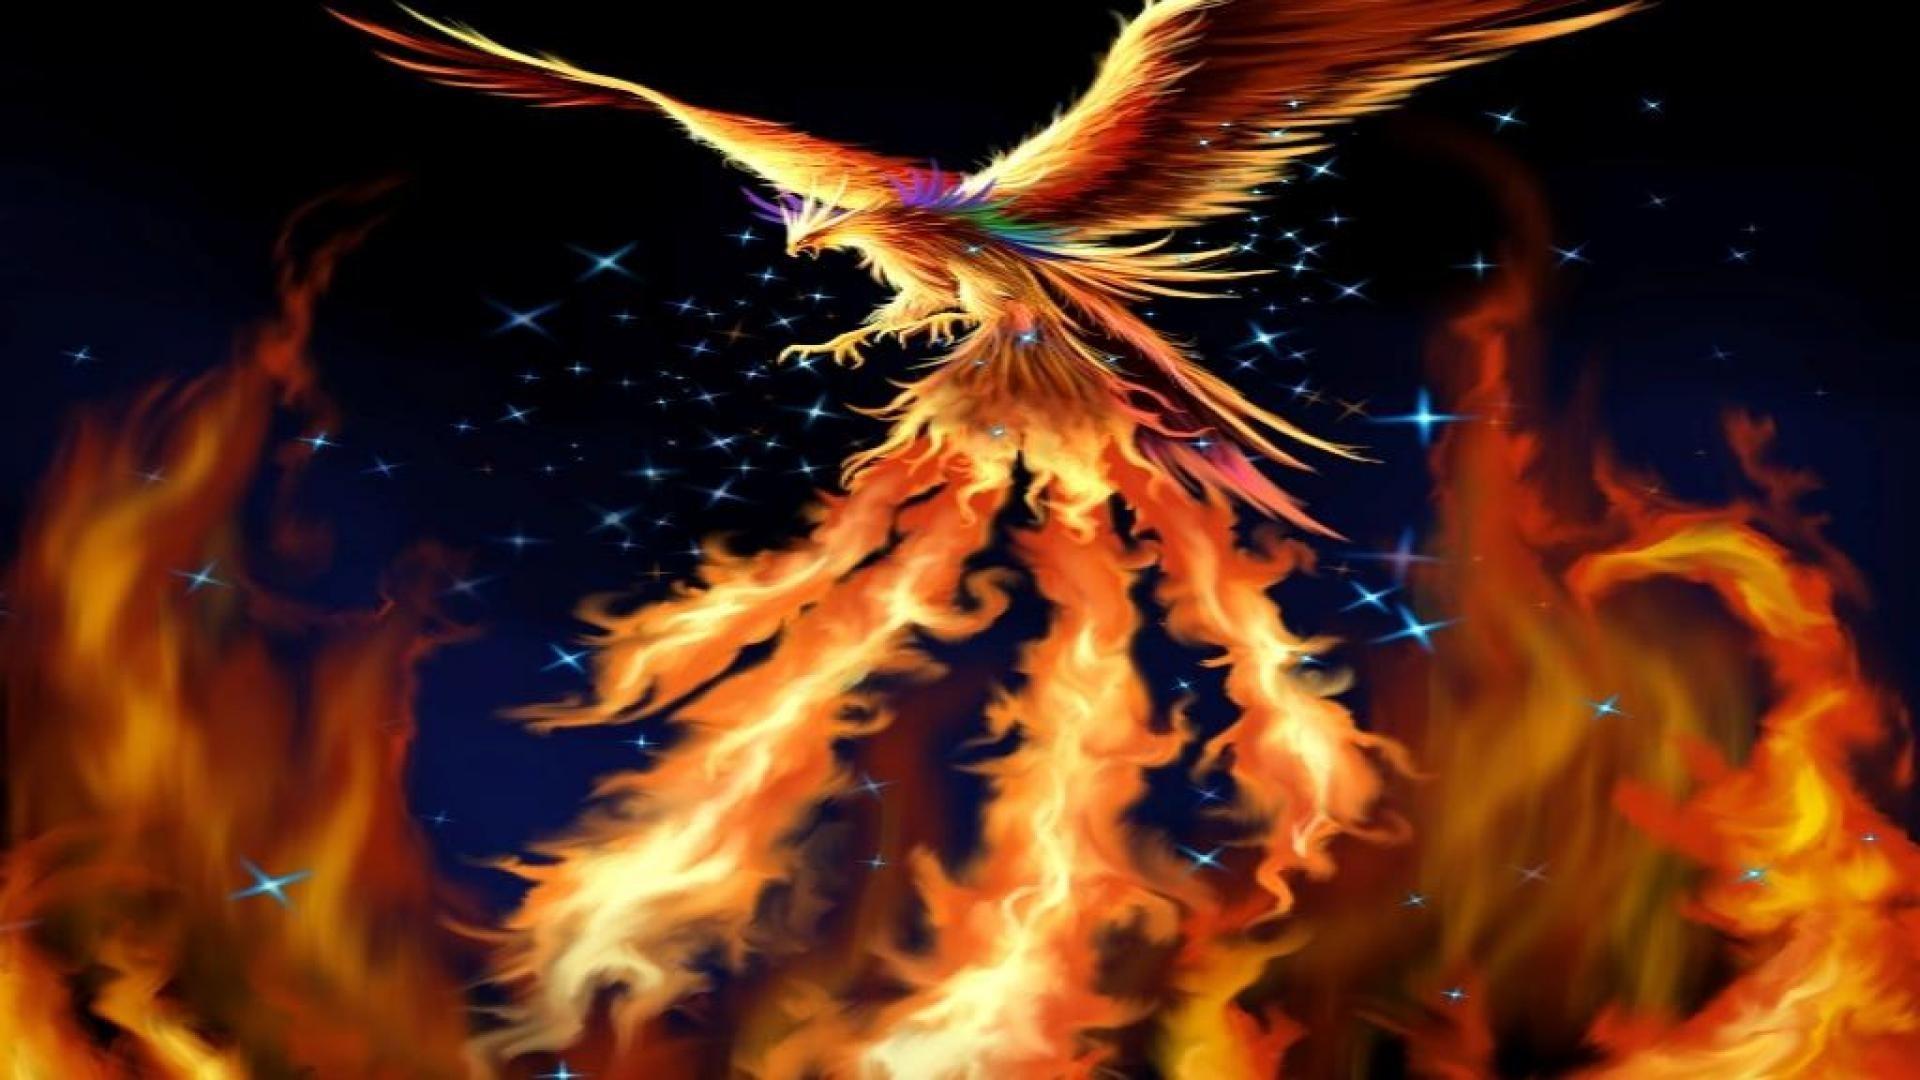 Dark Phoenix Wallpaper